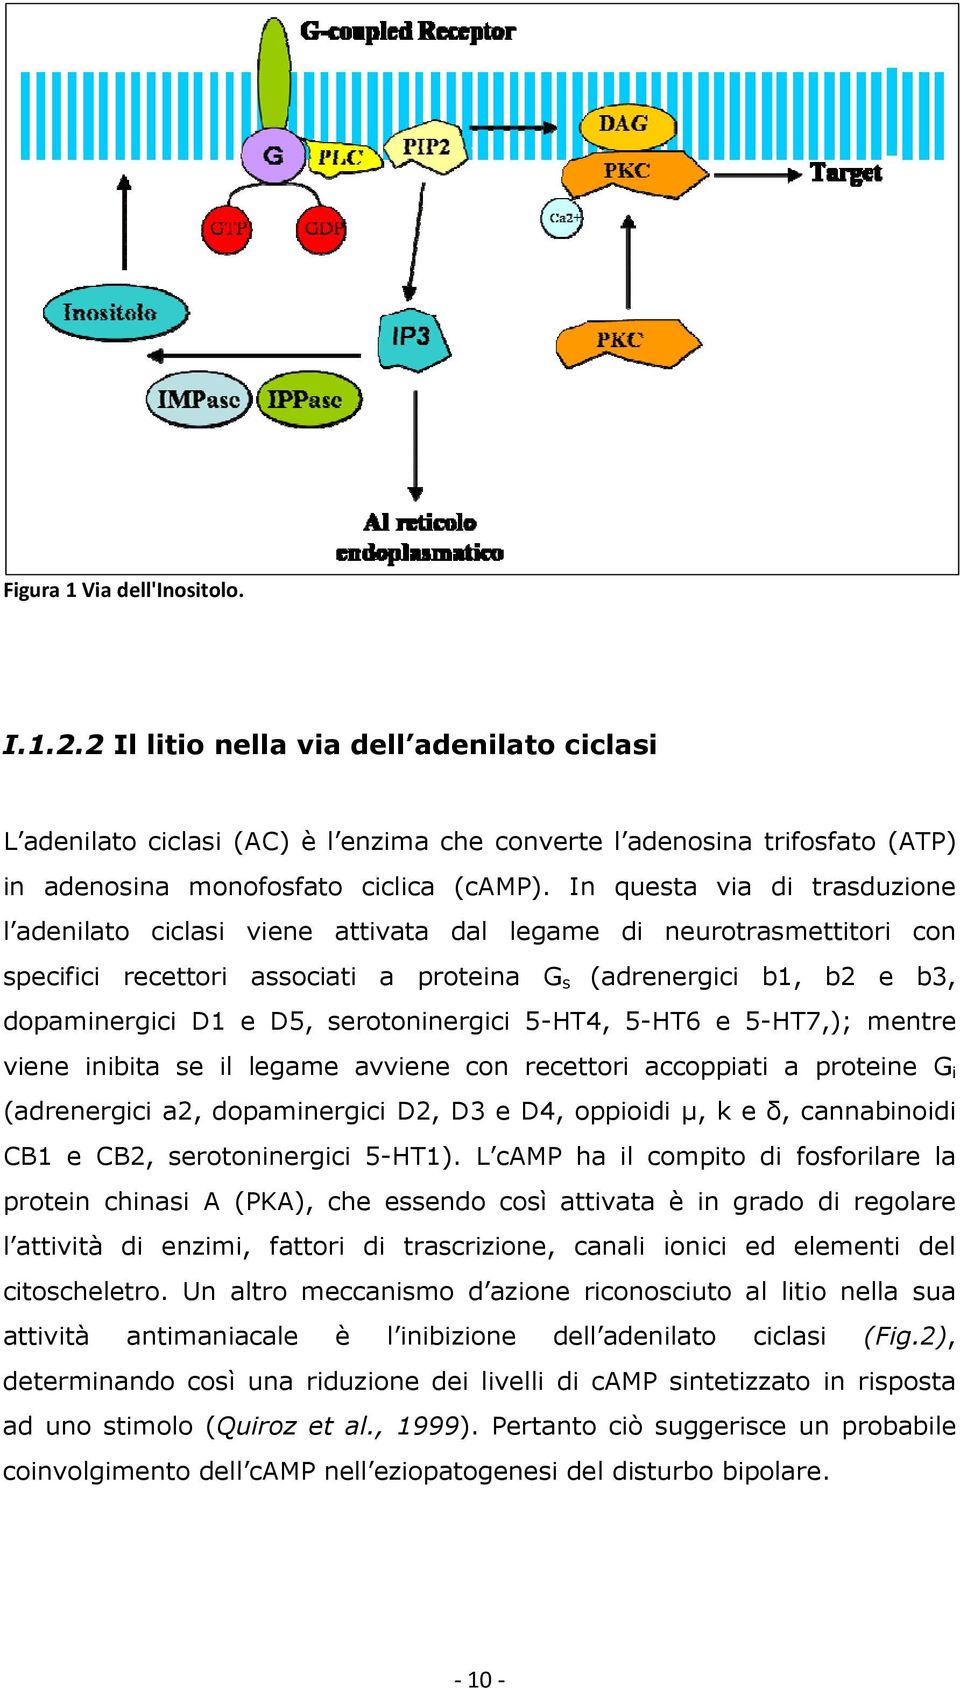 serotoninergici 5-HT4, 5-HT6 e 5-HT7,); mentre viene inibita se il legame avviene con recettori accoppiati a proteine G i (adrenergici a2, dopaminergici D2, D3 e D4, oppioidi µ, k e δ, cannabinoidi